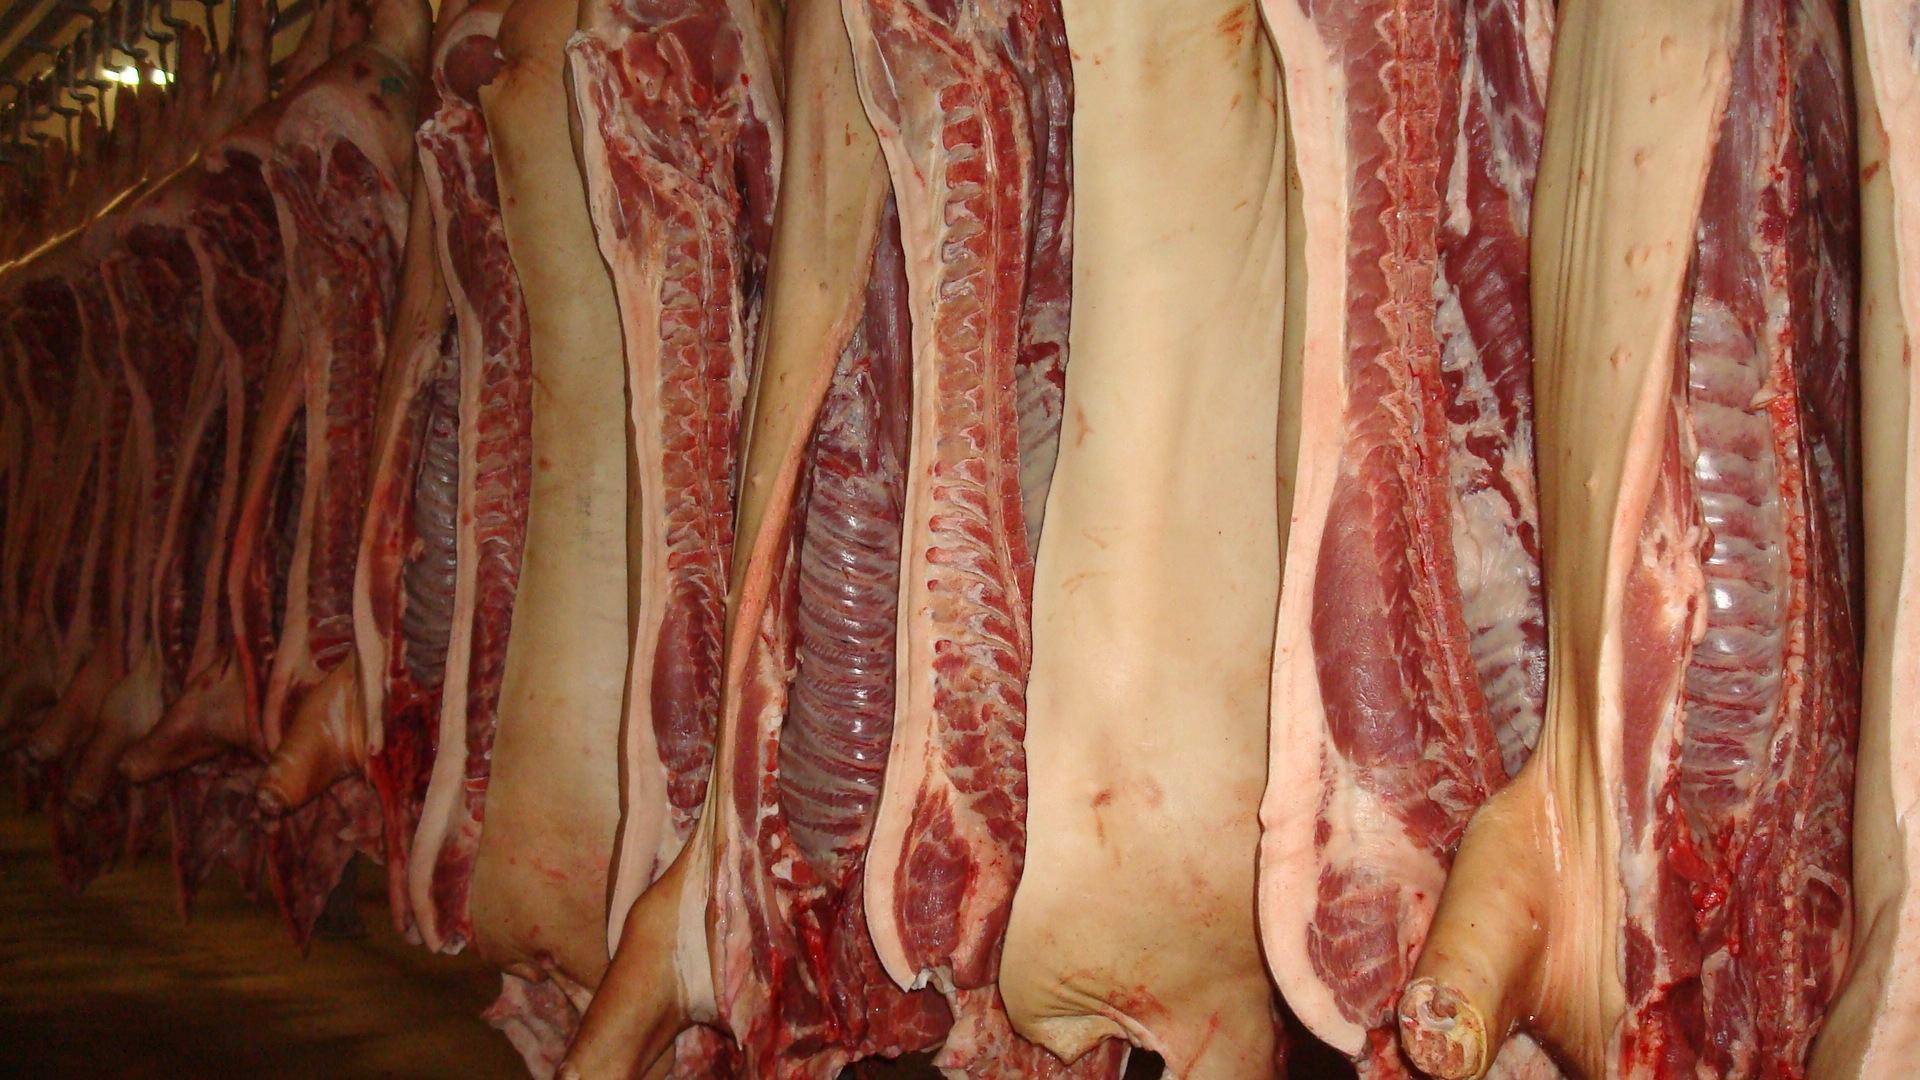 фото мяса свинины